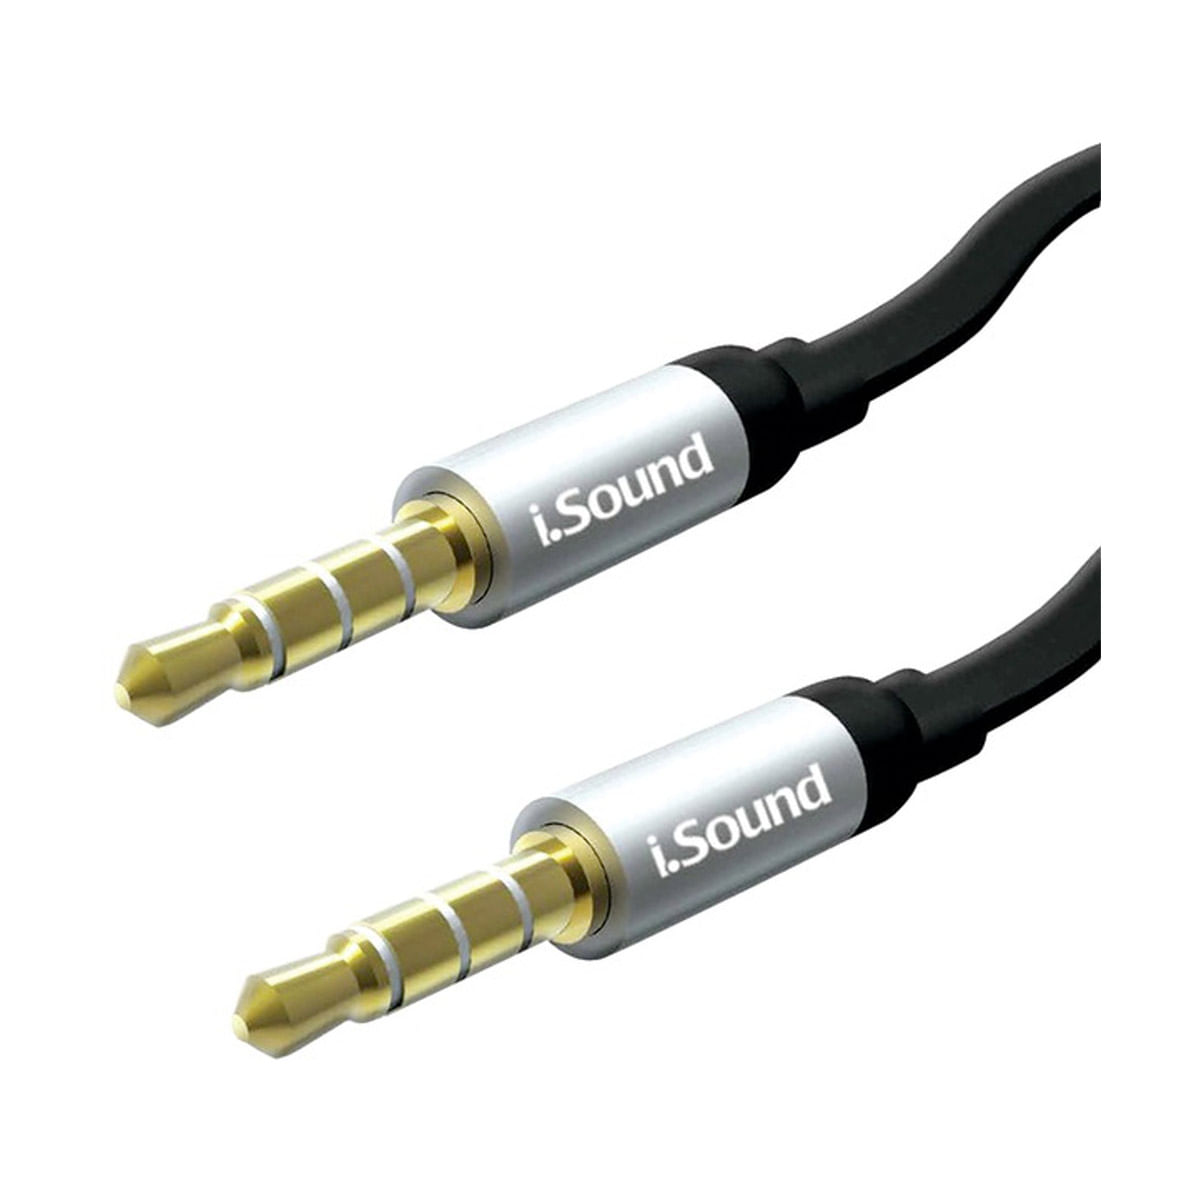 Comprar Cable Jack 3.5 Macho a 2 Jack 6.3 Macho de 1,5 M Online - Sonicolor